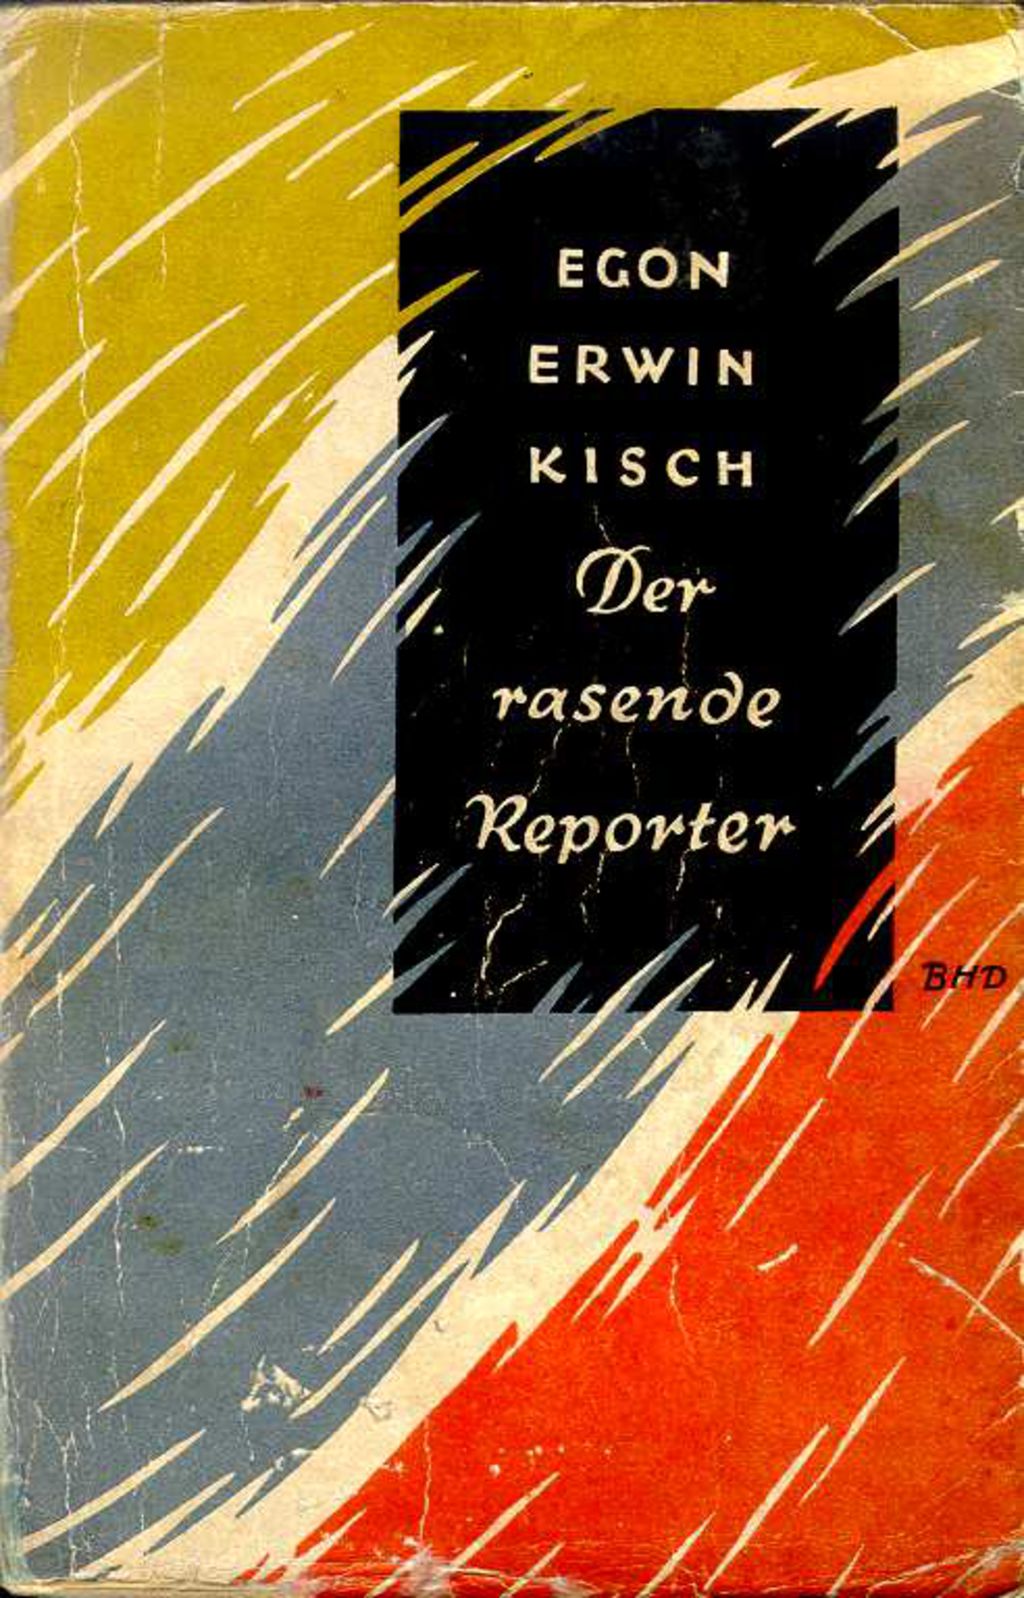 Buch: Kisch, Egon Erwin "Der rasende Reporter", 1925